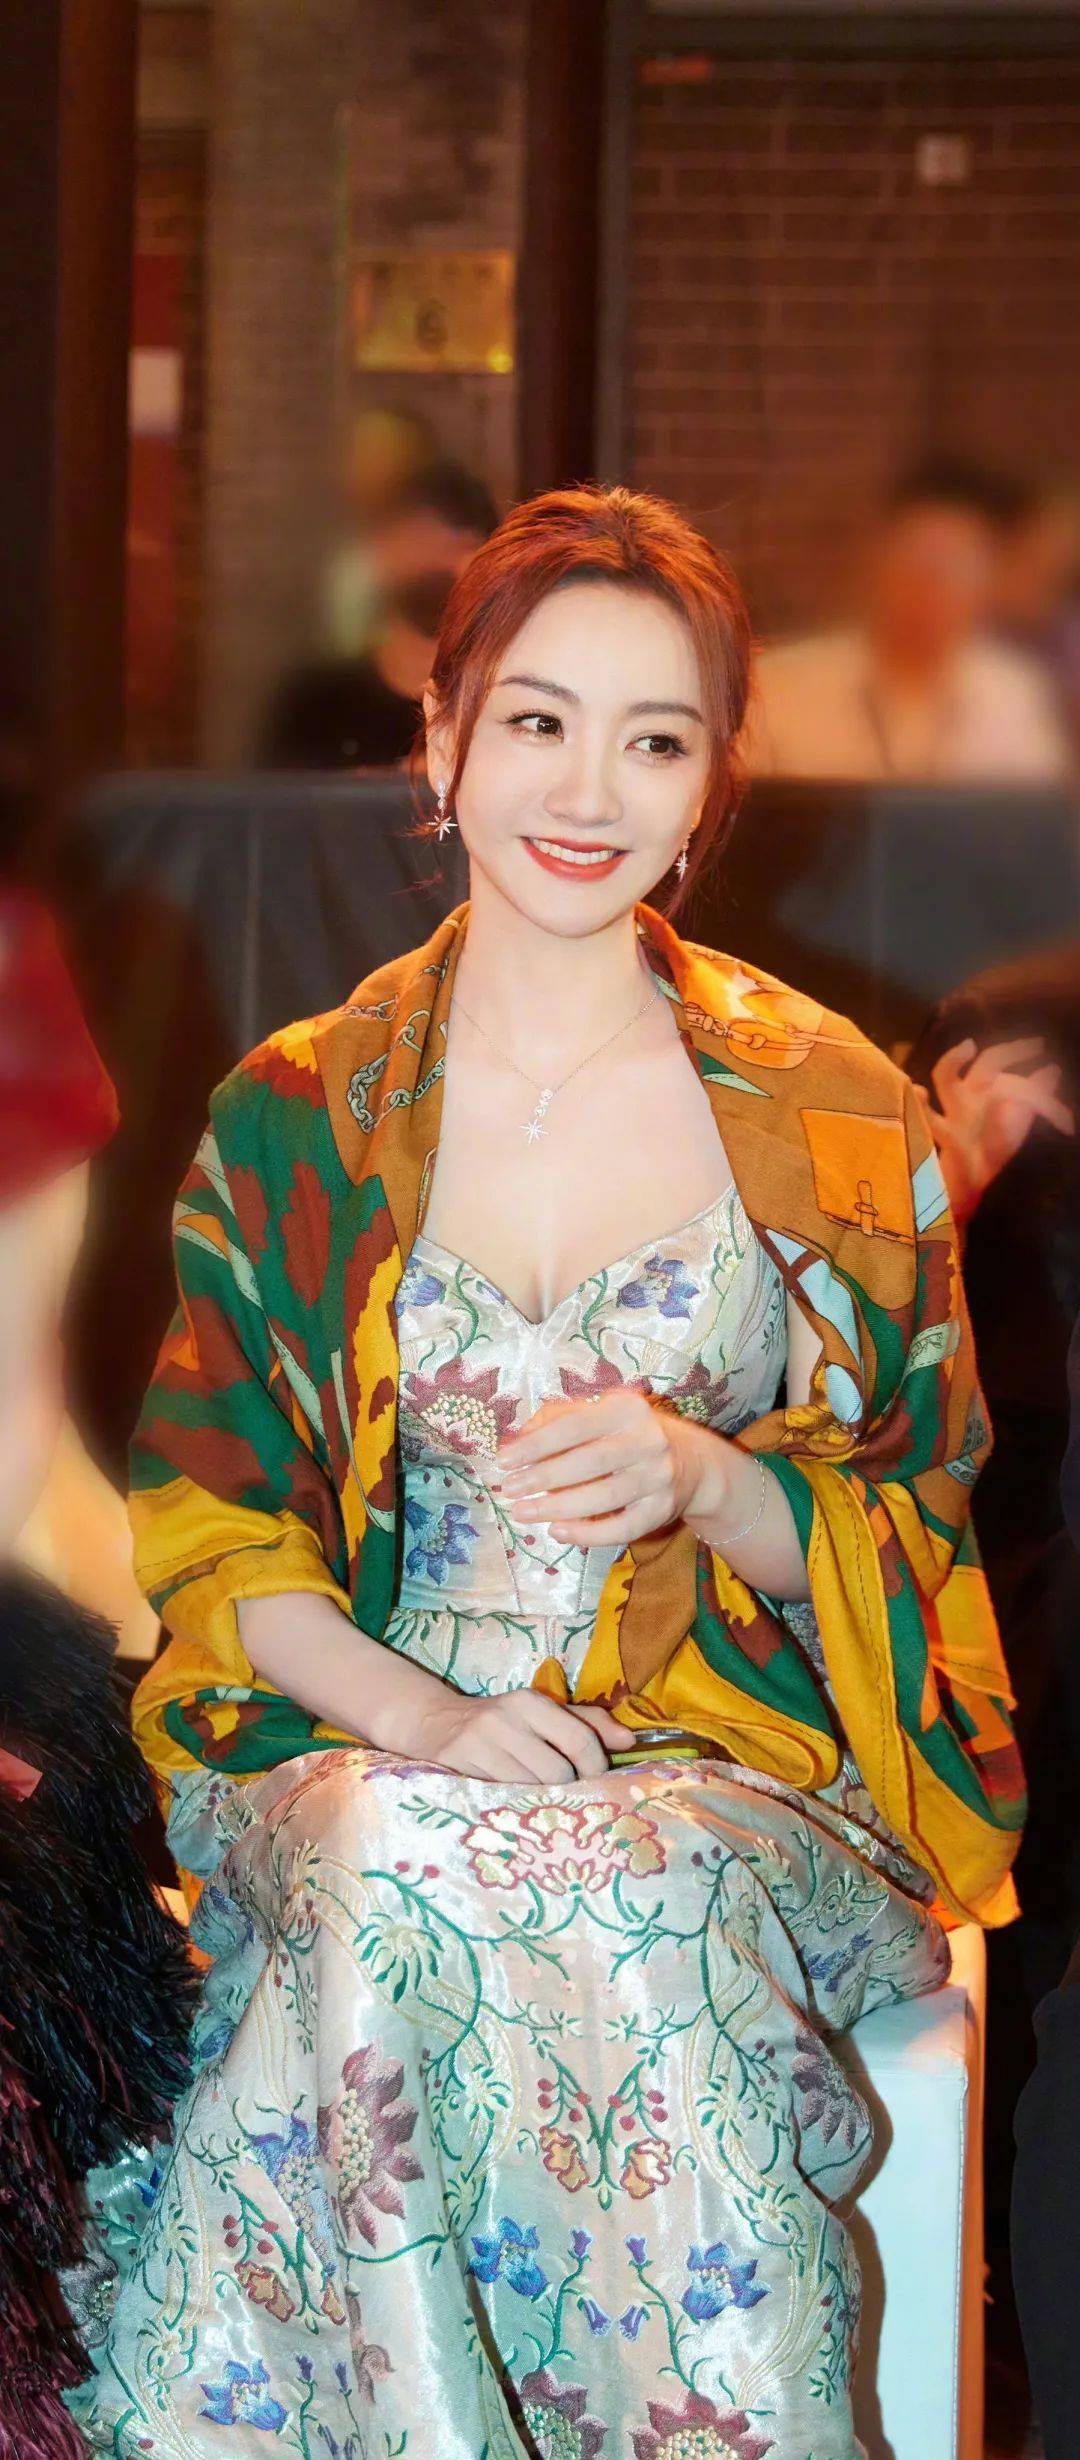 【杨蓉性感美图】花纹长裙,鲜艳典雅,化身北京时装周的花仙子